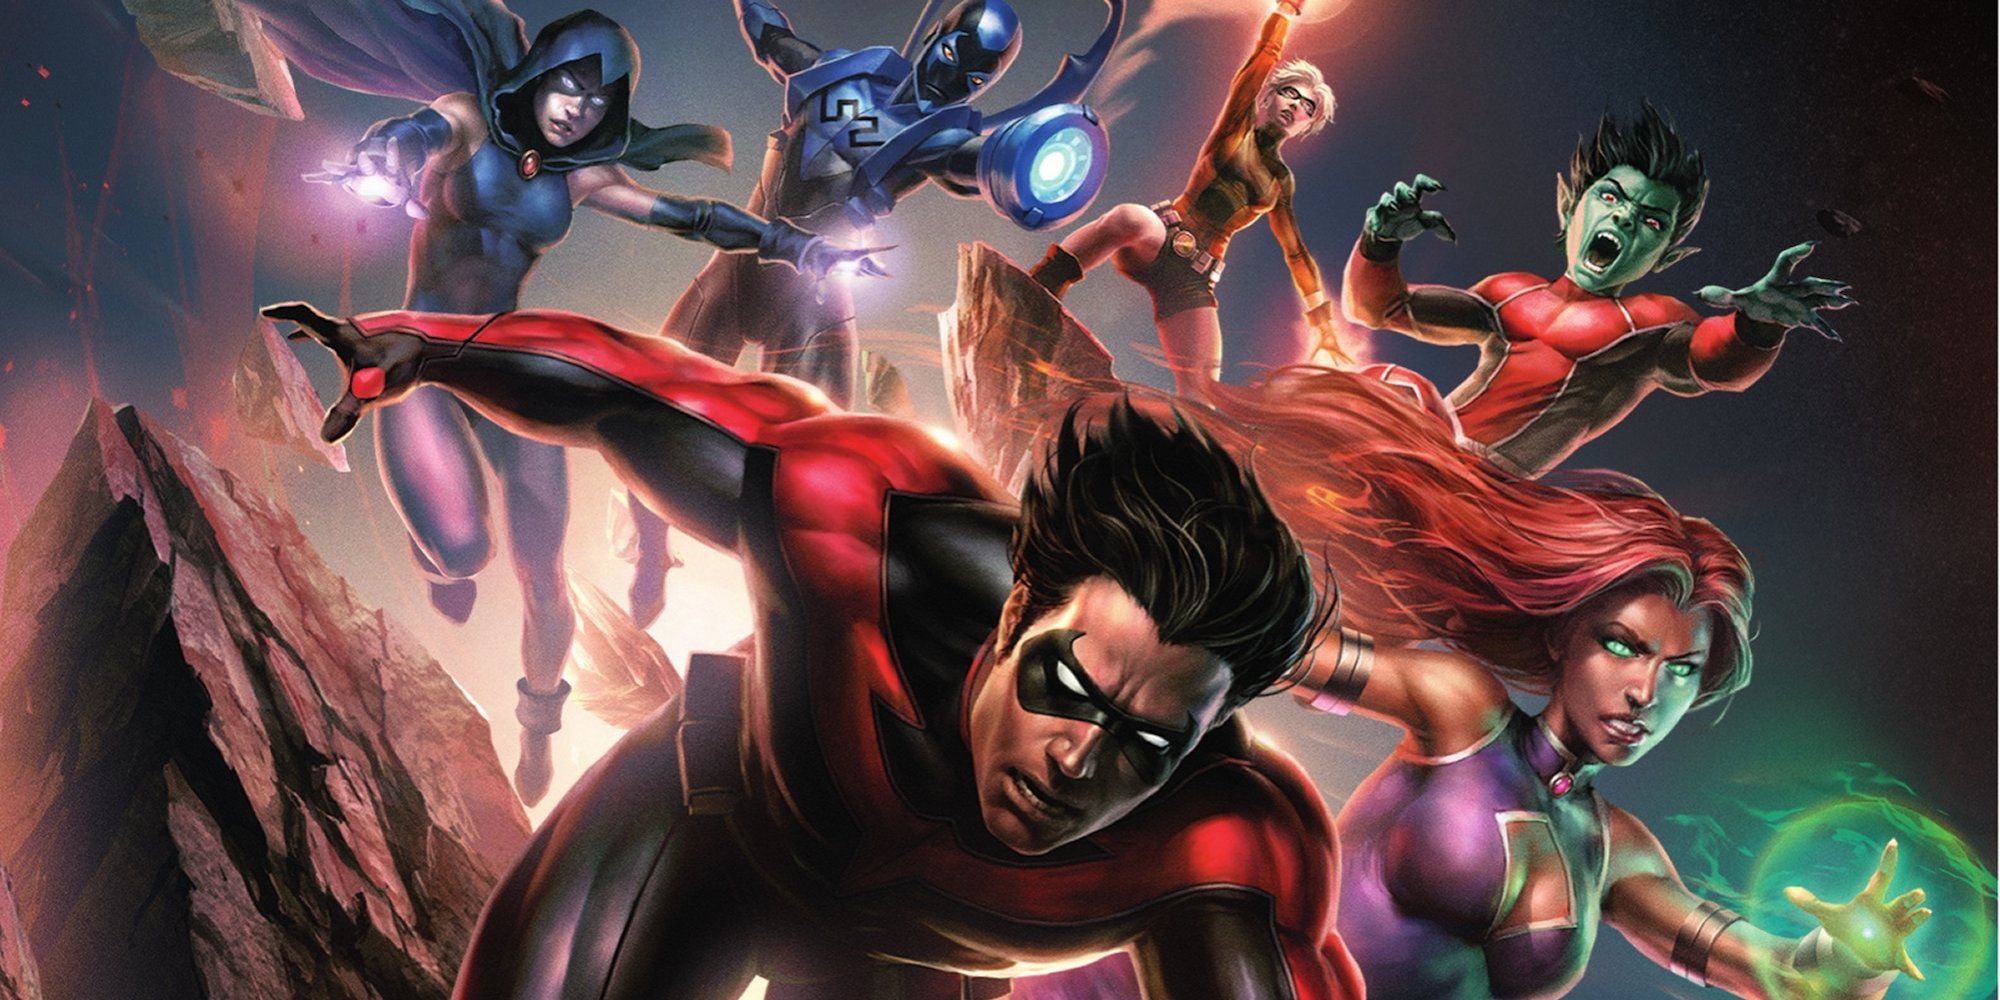 1 El sorprendente titán adolescente es la "mejor oportunidad" para salvar el futuro, adelanta DC